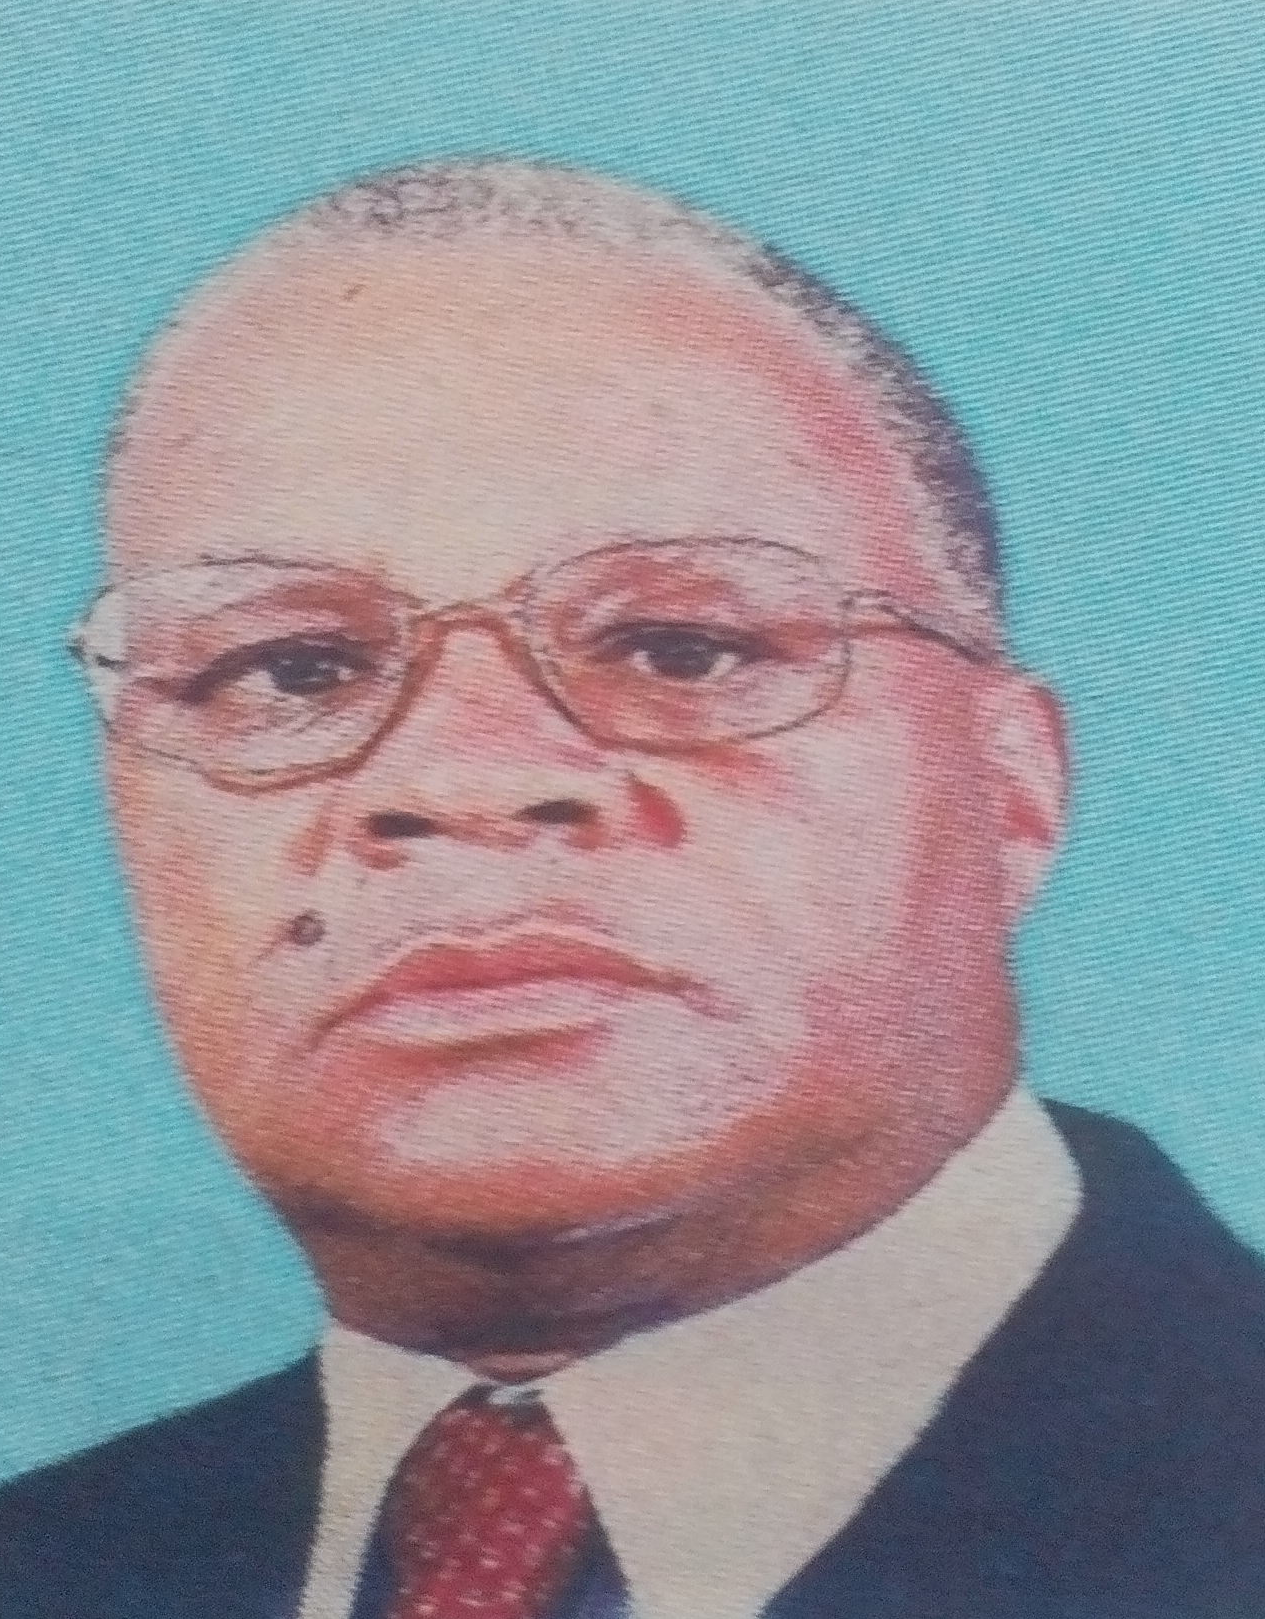 Obituary Image of Patrick Malaki Mutulu (Vavu)